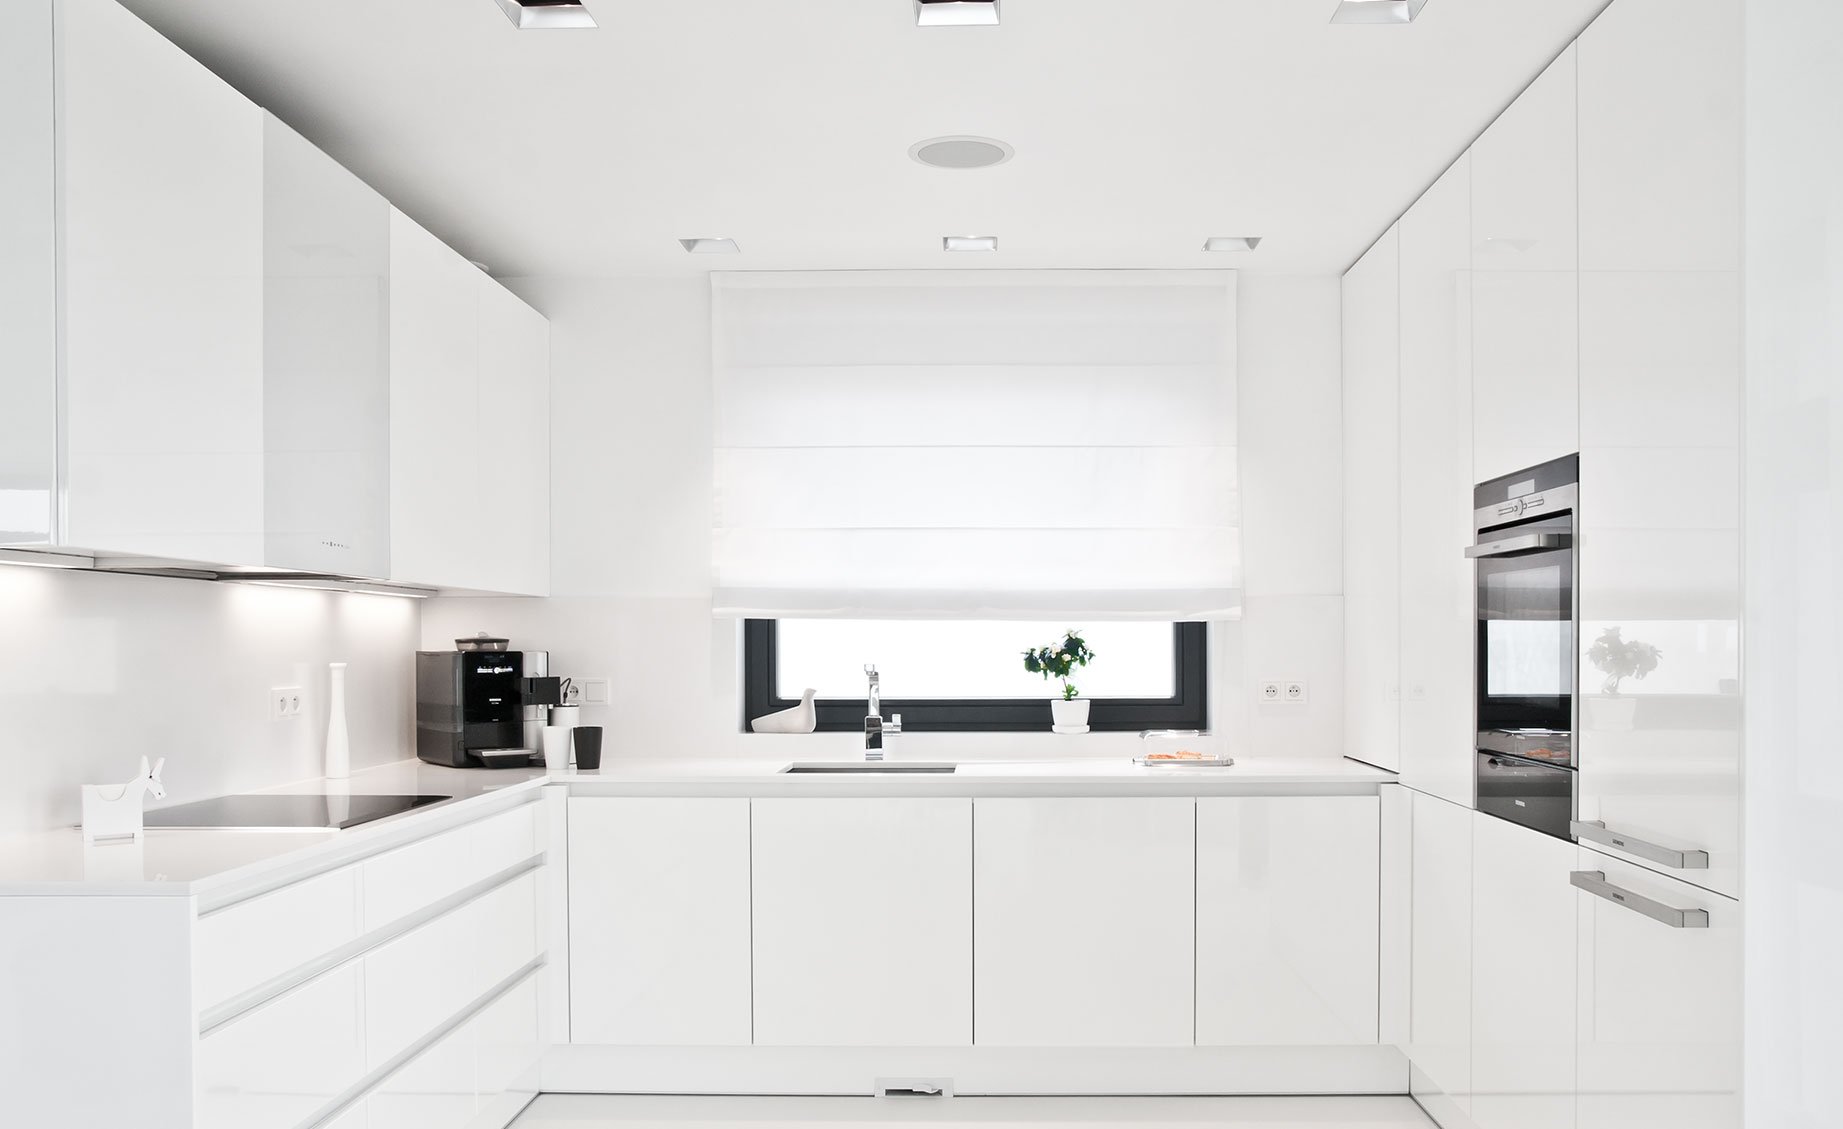 Дизайн кухни в стиле минимализм: фото готовых интерьеров, современные идеи